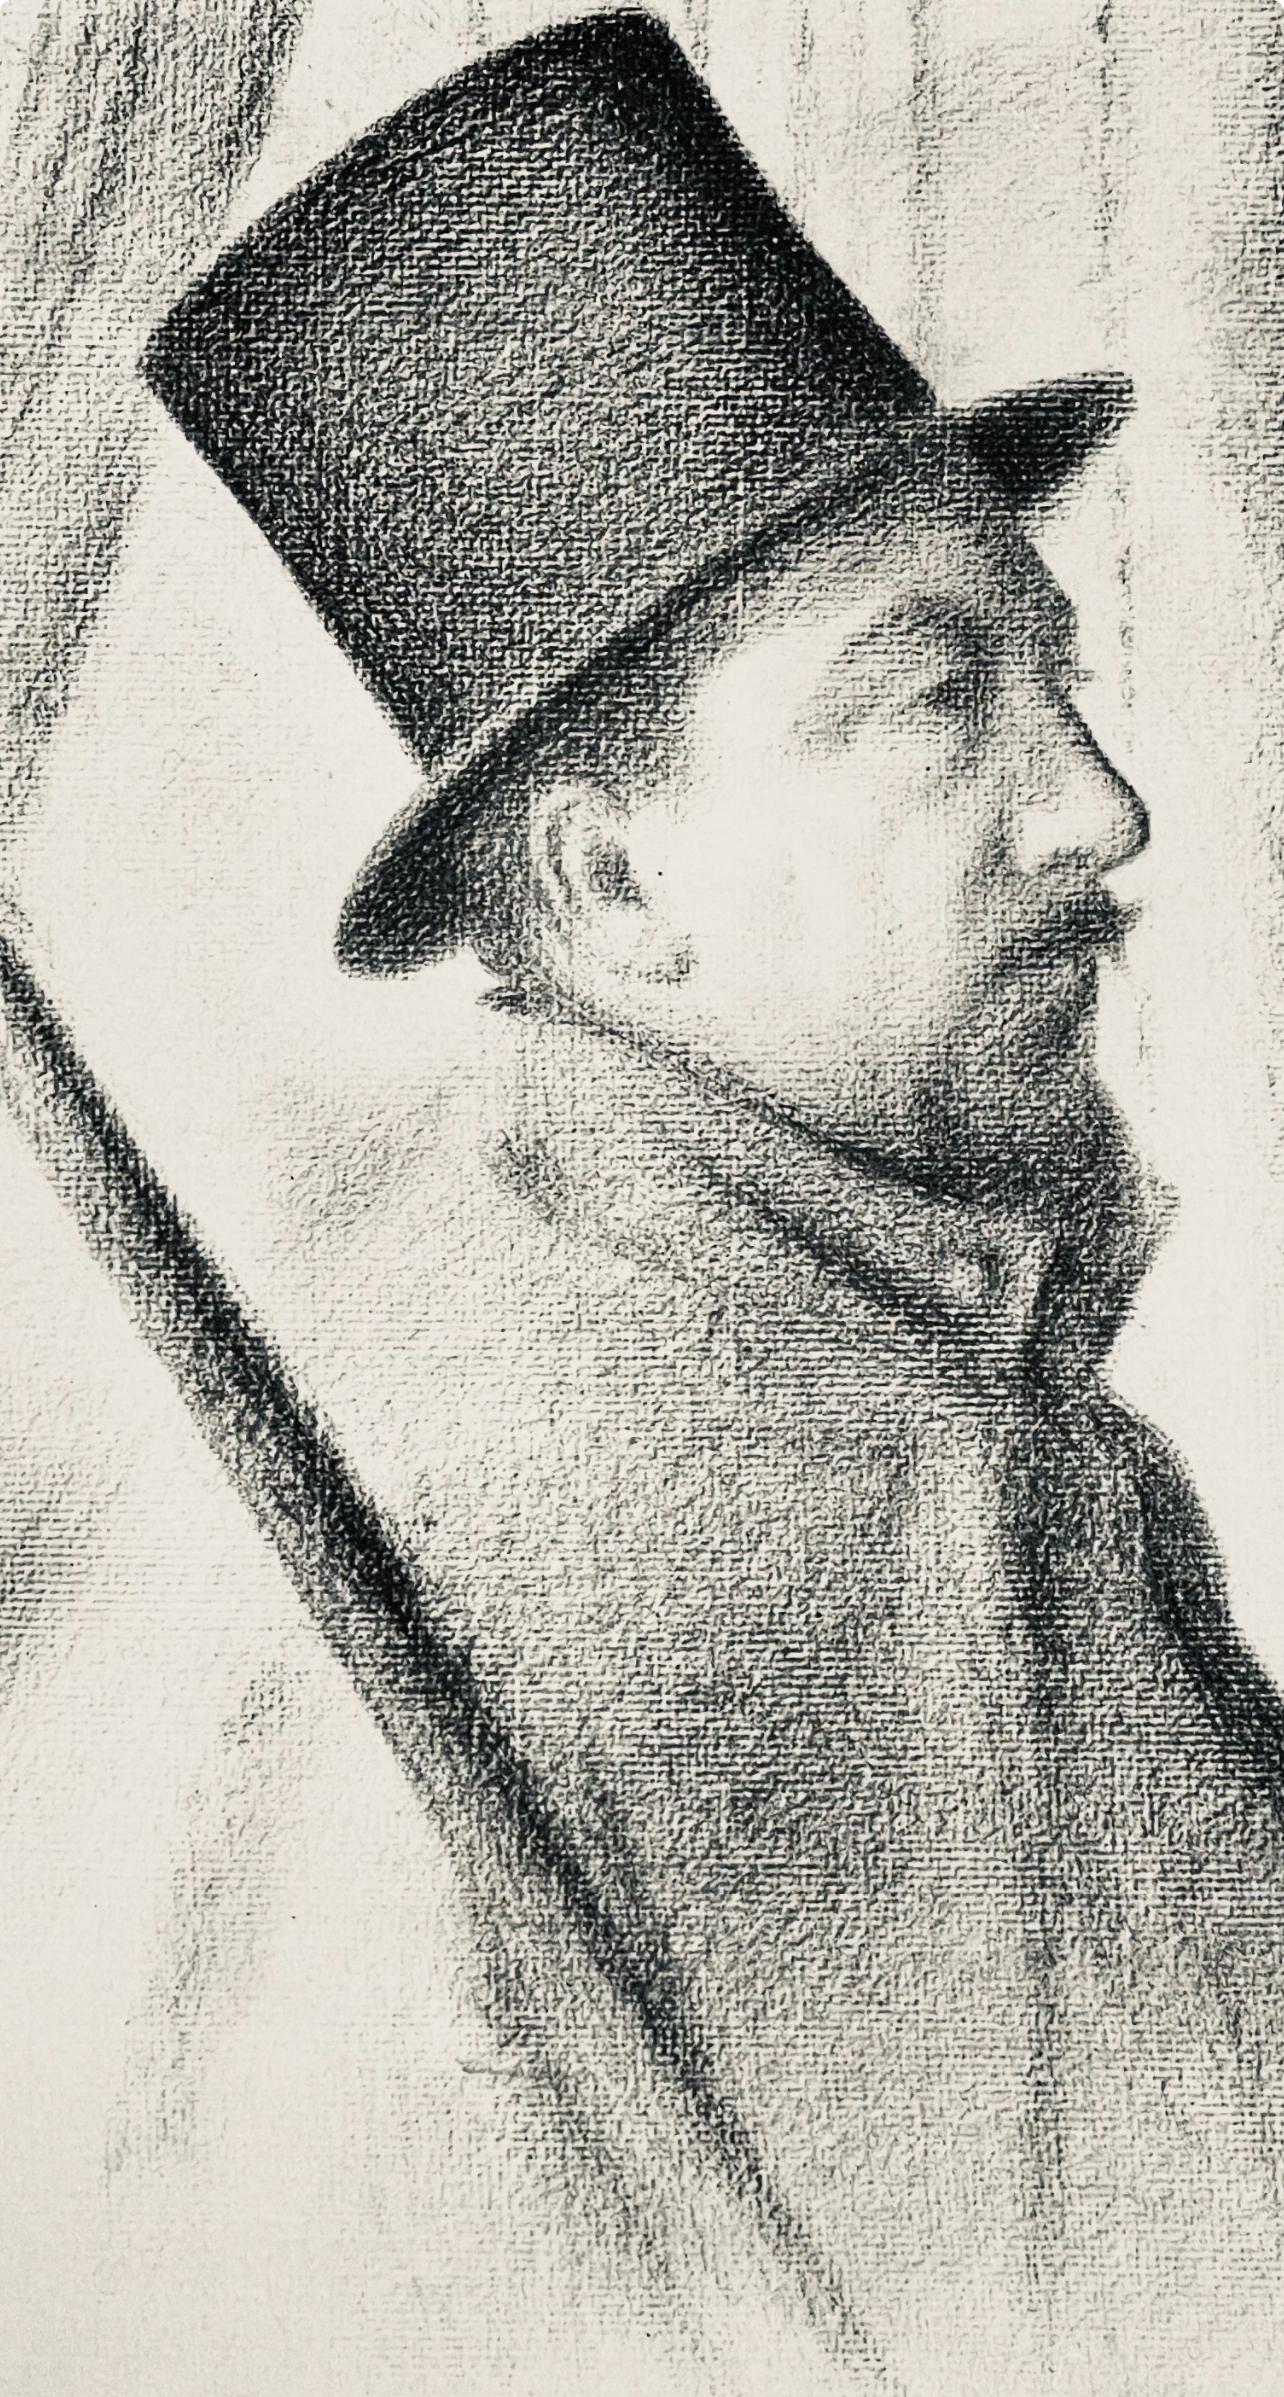 Seurat, Portrait de Paul Signac, Seurat (after) - Print by Georges Seurat